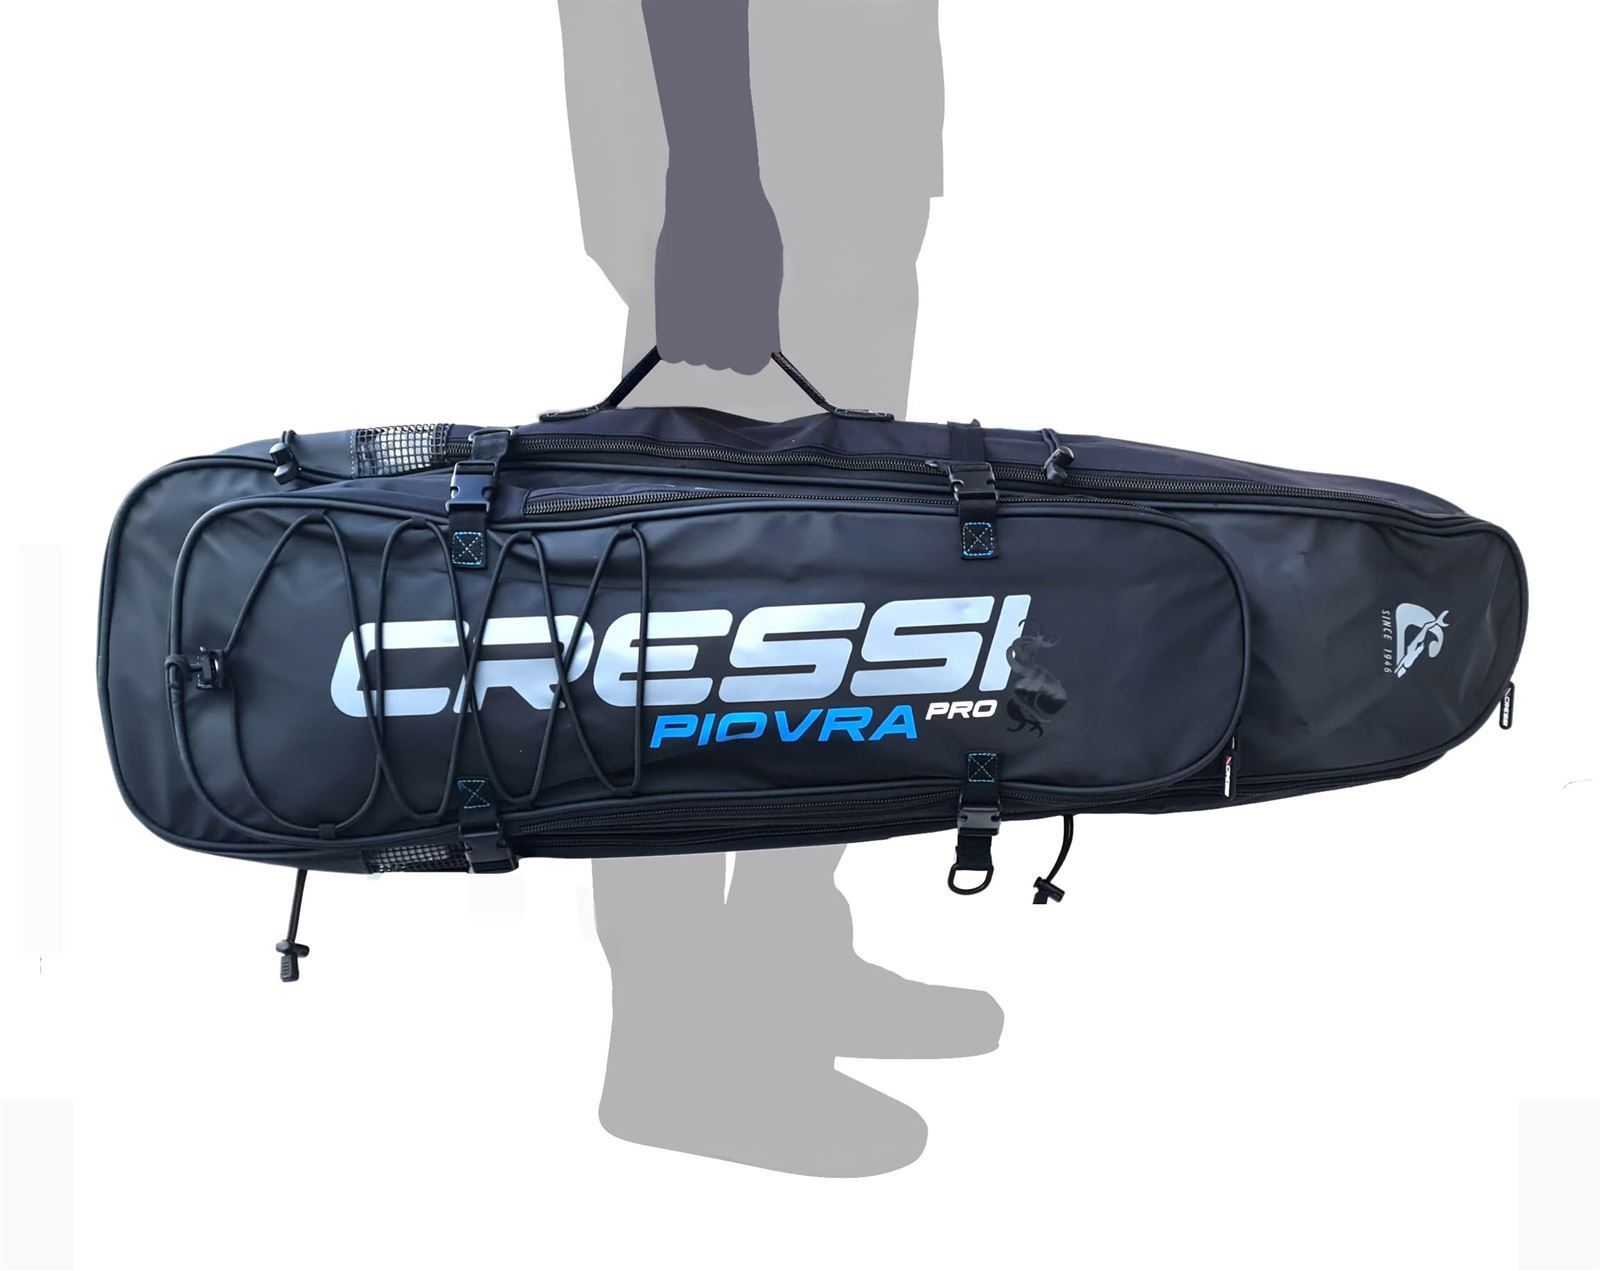 Mochila impermeable CRESSI Piovra Pro para equipo completo de pesca submarina - Imagen 4